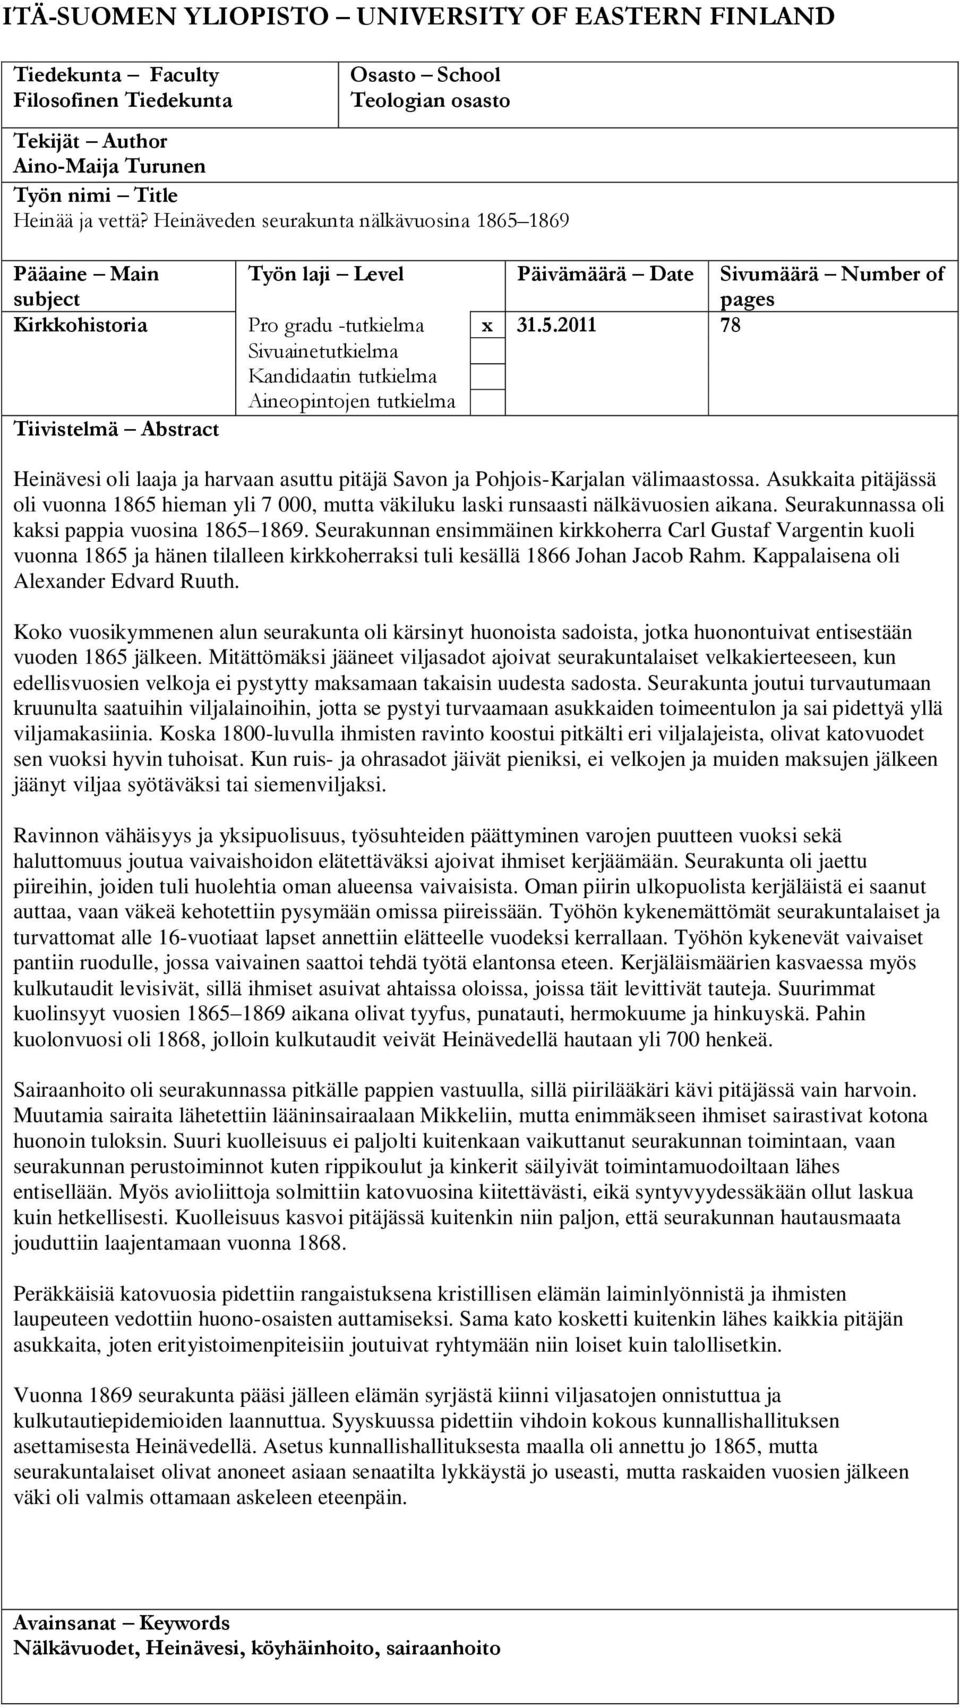 1869 Pääaine Main subject Työn laji Level Päivämäärä Date Sivumäärä Number of pages Kirkkohistoria Pro gradu -tutkielma x 31.5.